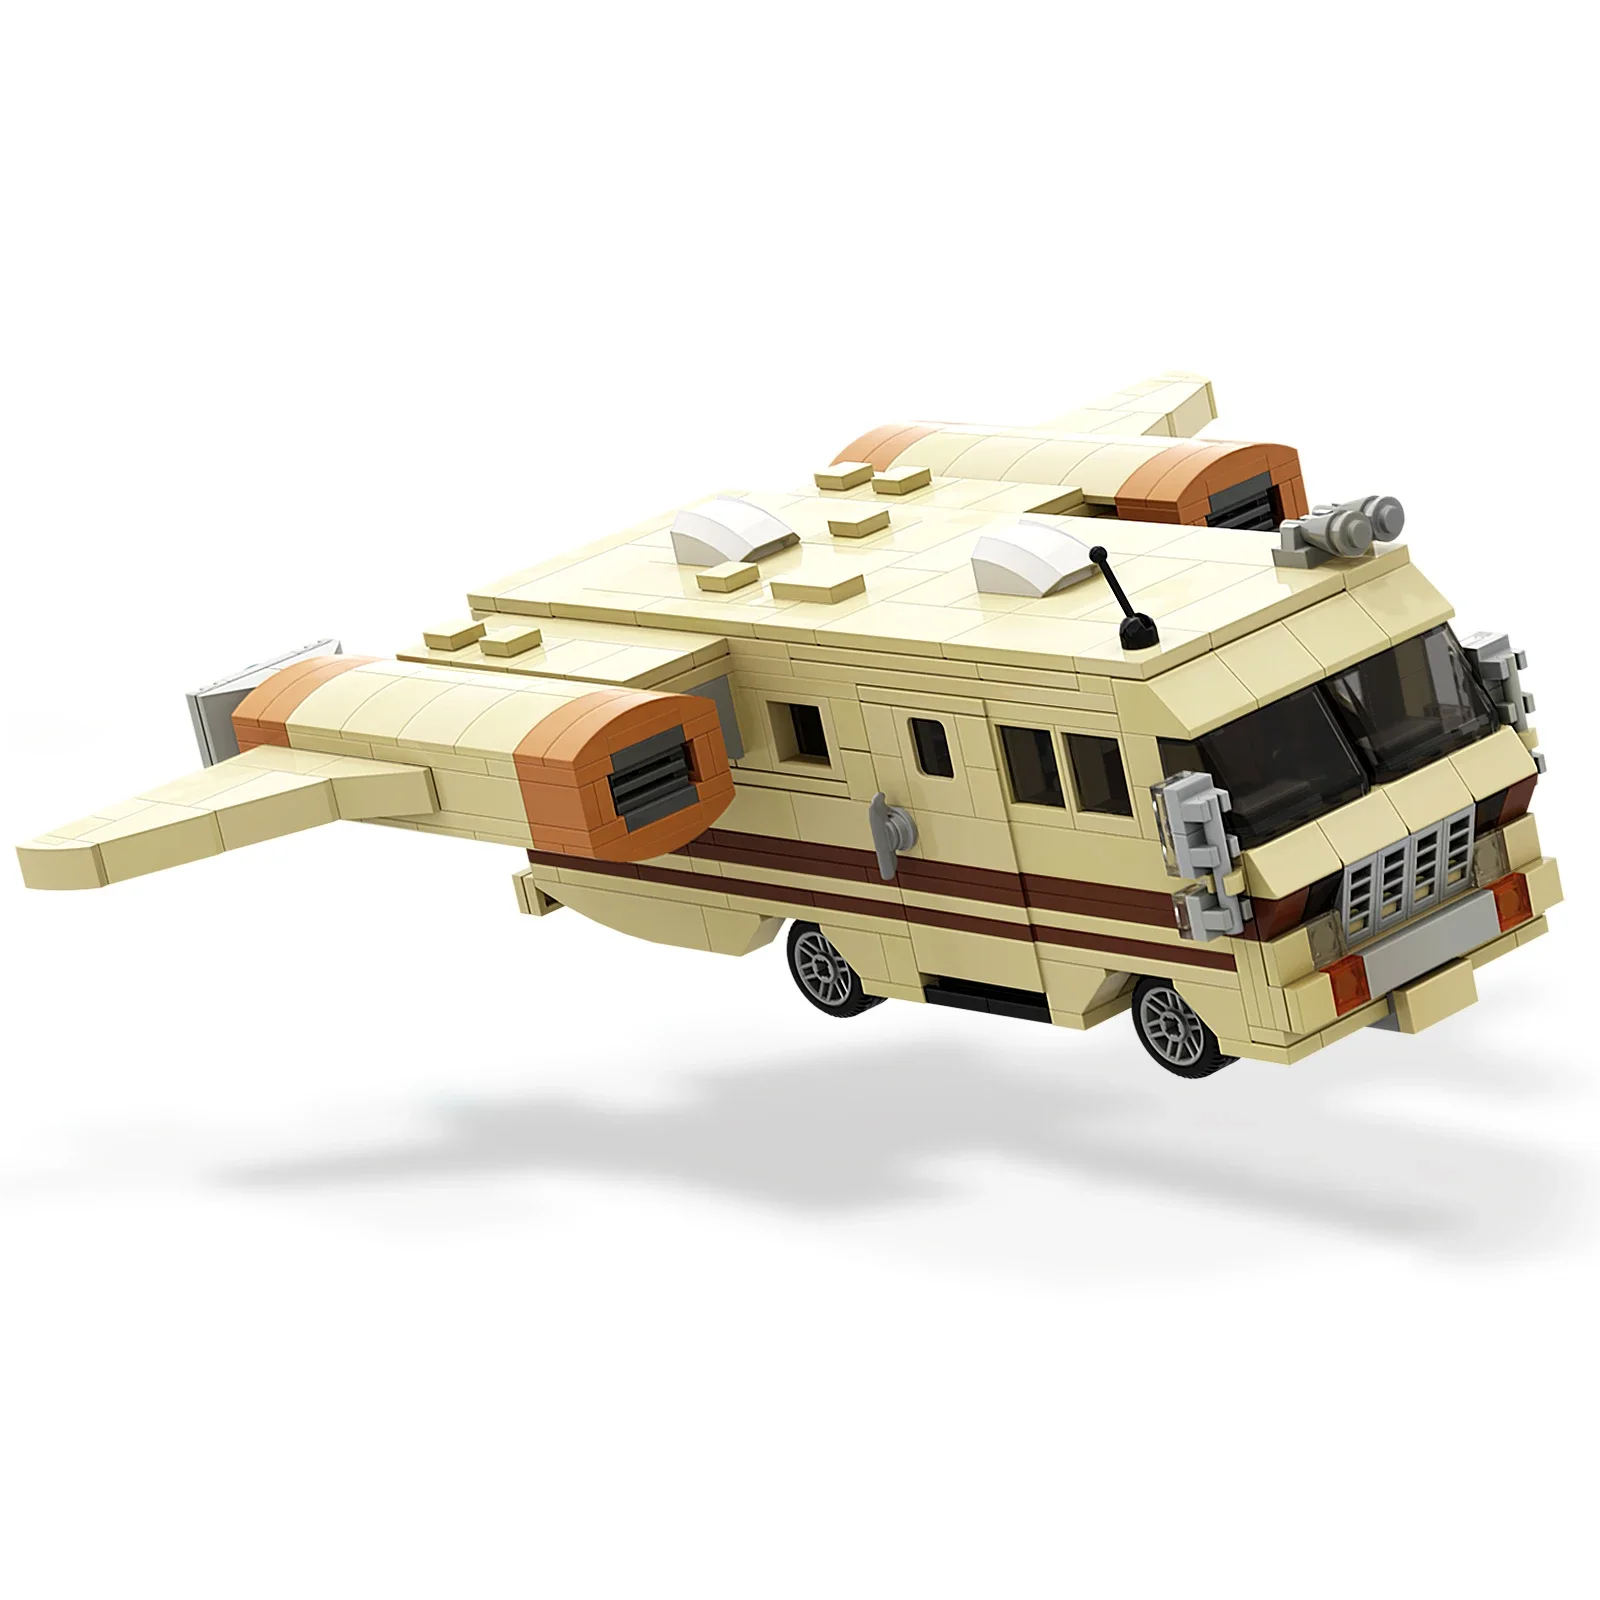 

MOC Spaceballs Eagle-5 Breaking Bad Van RV Spaceship Building Block Set Flying Vehicle Camping vehicle Brick Toy Kids Gift